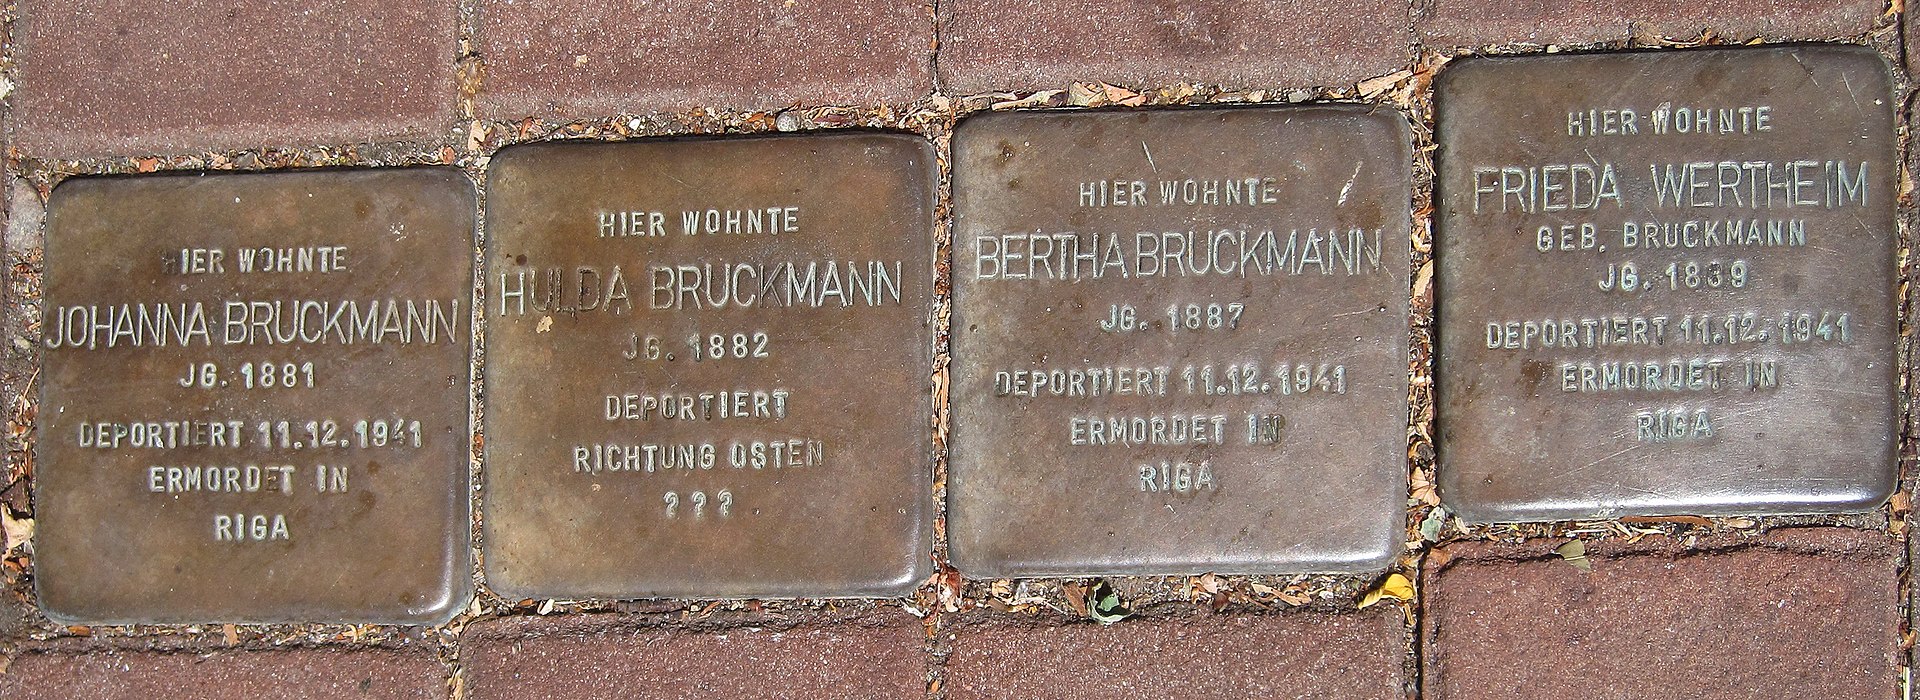 Xanten-StolpersteineBruckmannWertheim-Bemmelstr6-1-Asio.JPG